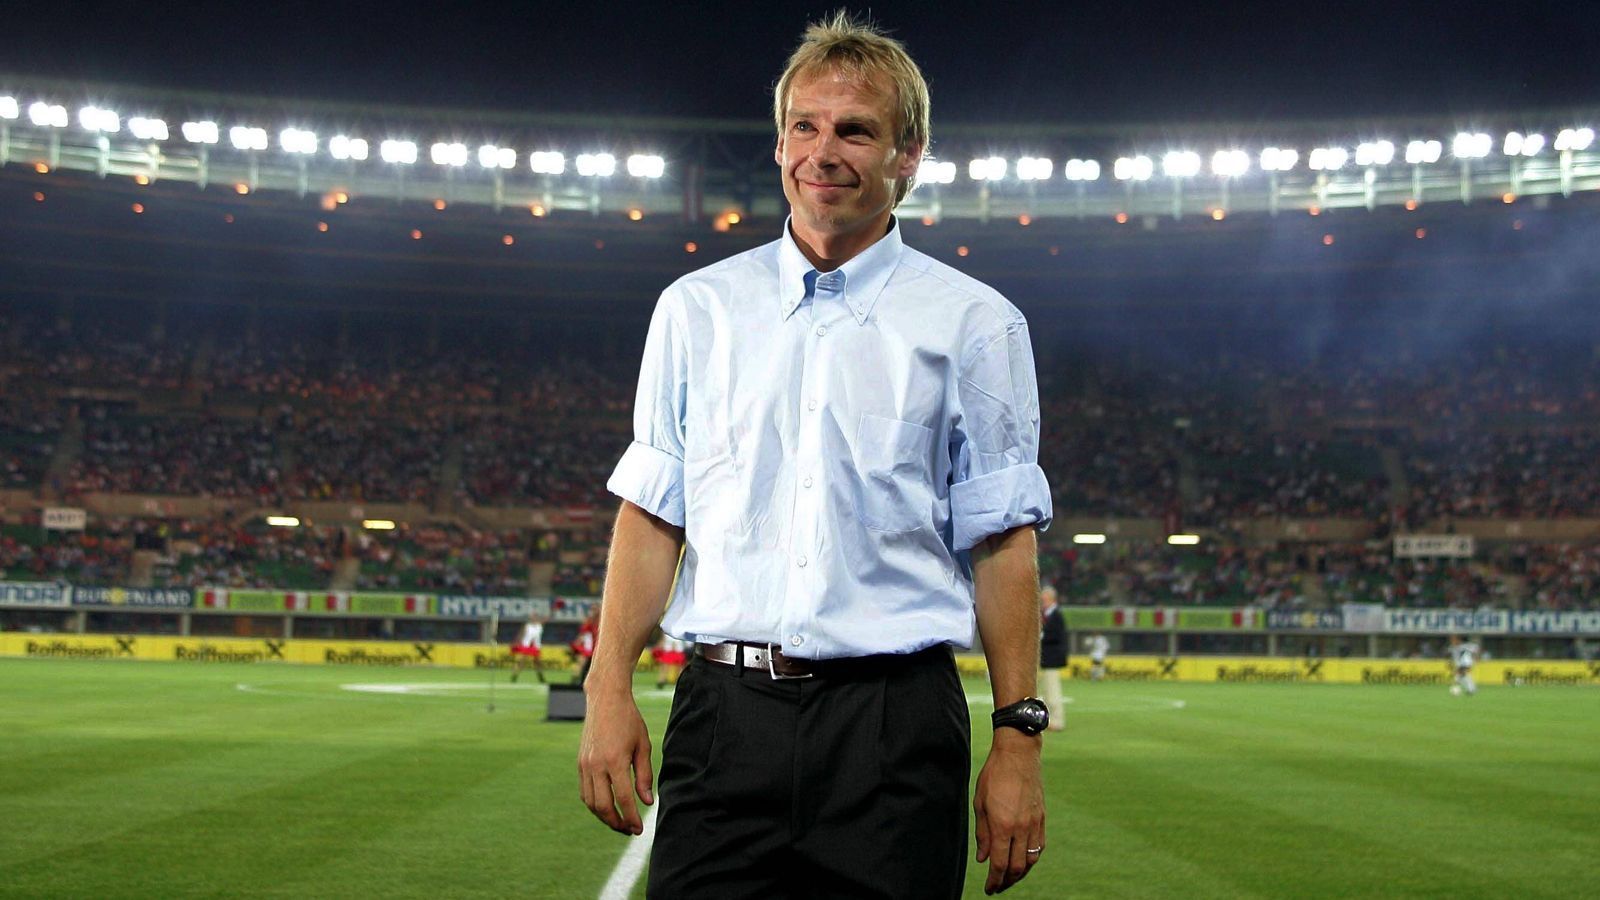 
                <strong>Jürgen Klinsmann</strong><br>
                Jürgen Klinsmann war die Überraschungslösung im Hinblick auf die WM 2006, weil er nie zuvor als Trainer gearbeitet hatte. Seine Trainerlizenz hatte er im Jahre 2000 bei einem DFB-Sonderlehrgang für ehemalige Nationalspieler erworben. Am 26. Juli 2004, also kurz nach der erfolglosen Europameisterschaft, wurde er als neuer Bundestrainer vorgestellt. Einen Monat später gewann Deutschland mit ihm 3:1 gegen Österreich.
              